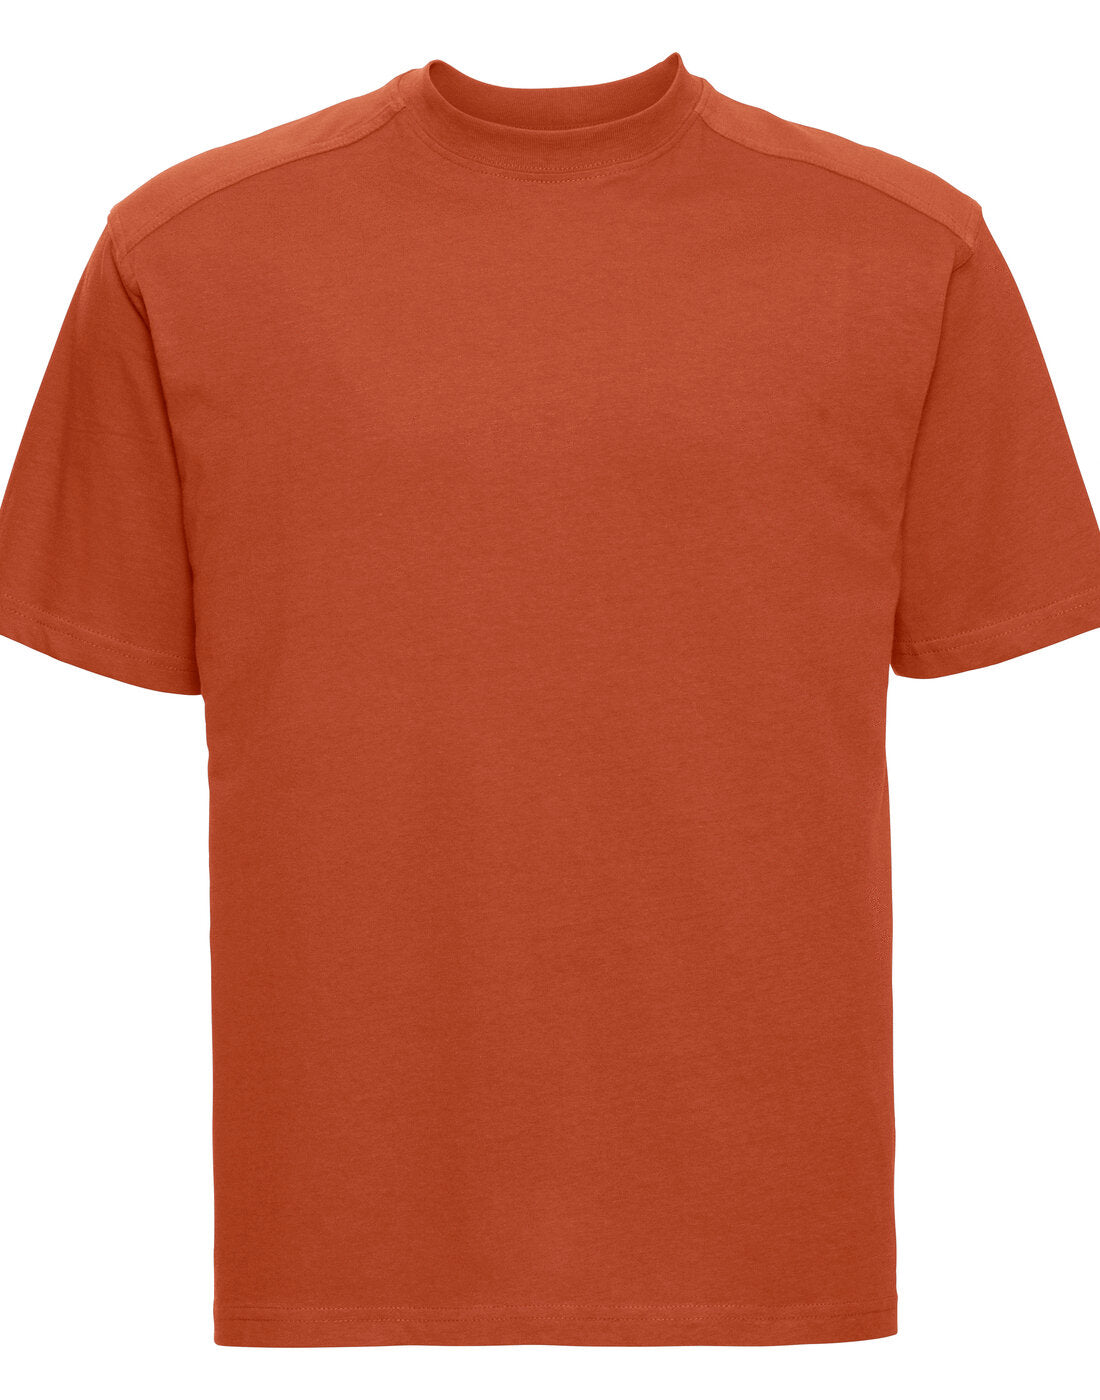 Russell Heavy Duty Workwear T-Shirt - Orange